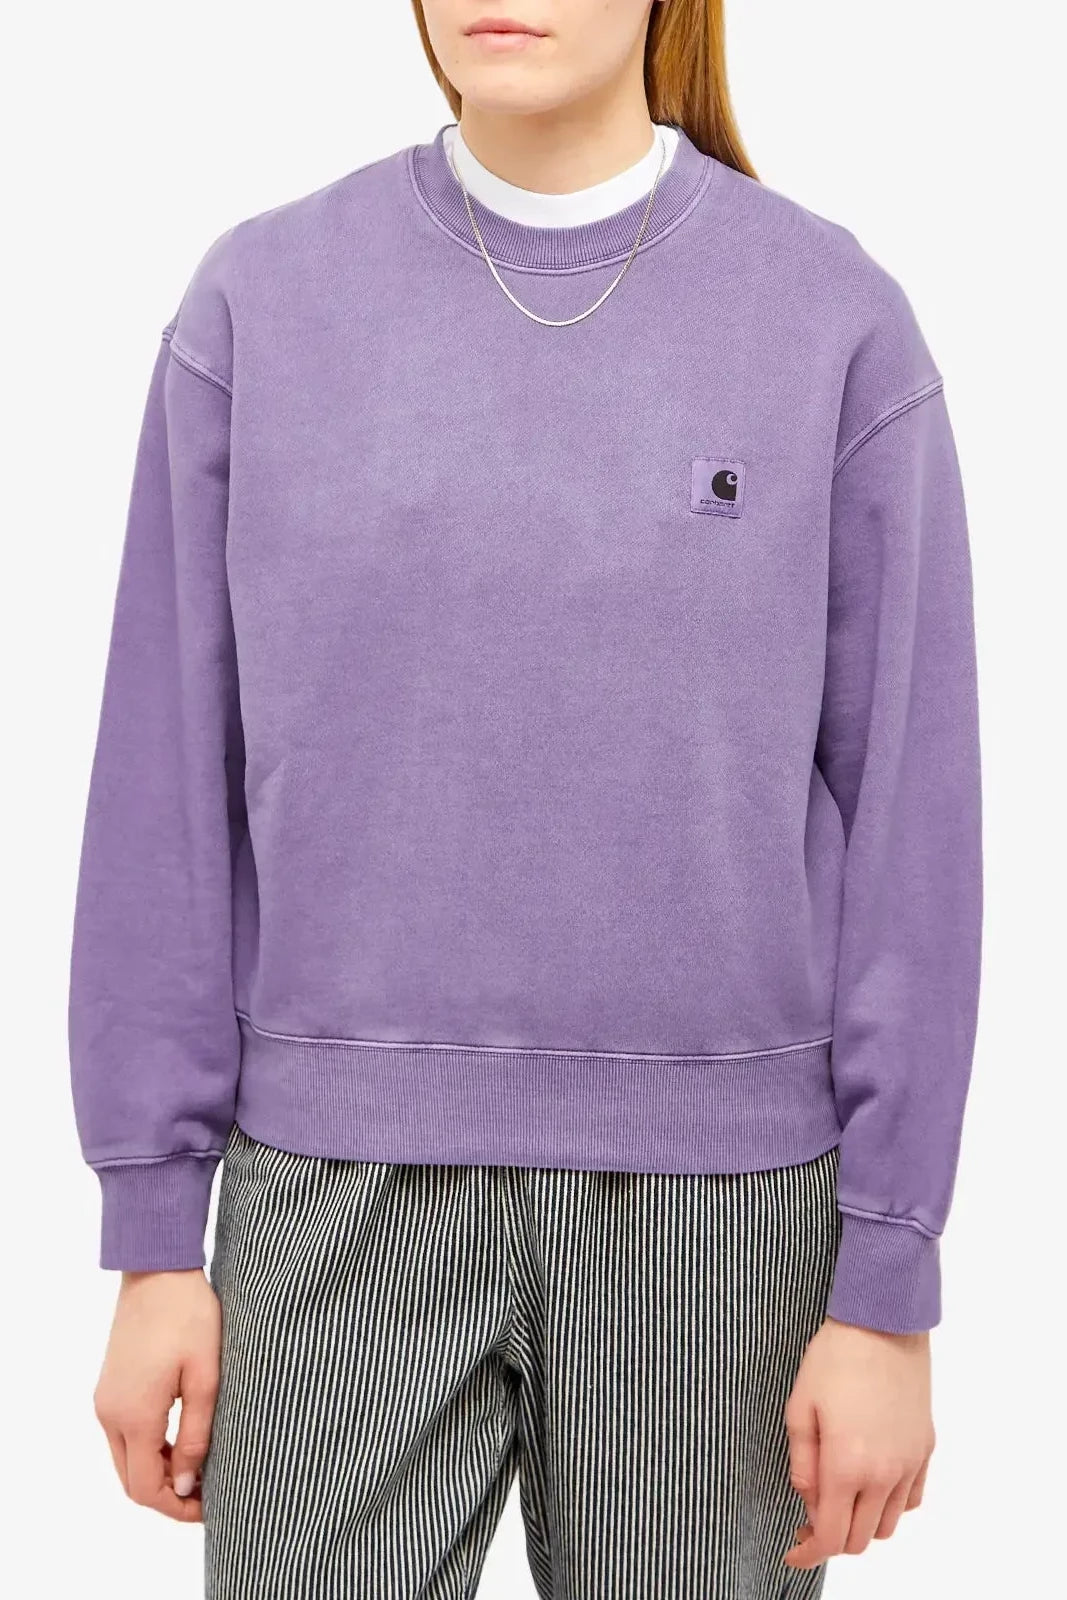 Carhartt WIP Nelson Sweatshirt Purple / XS